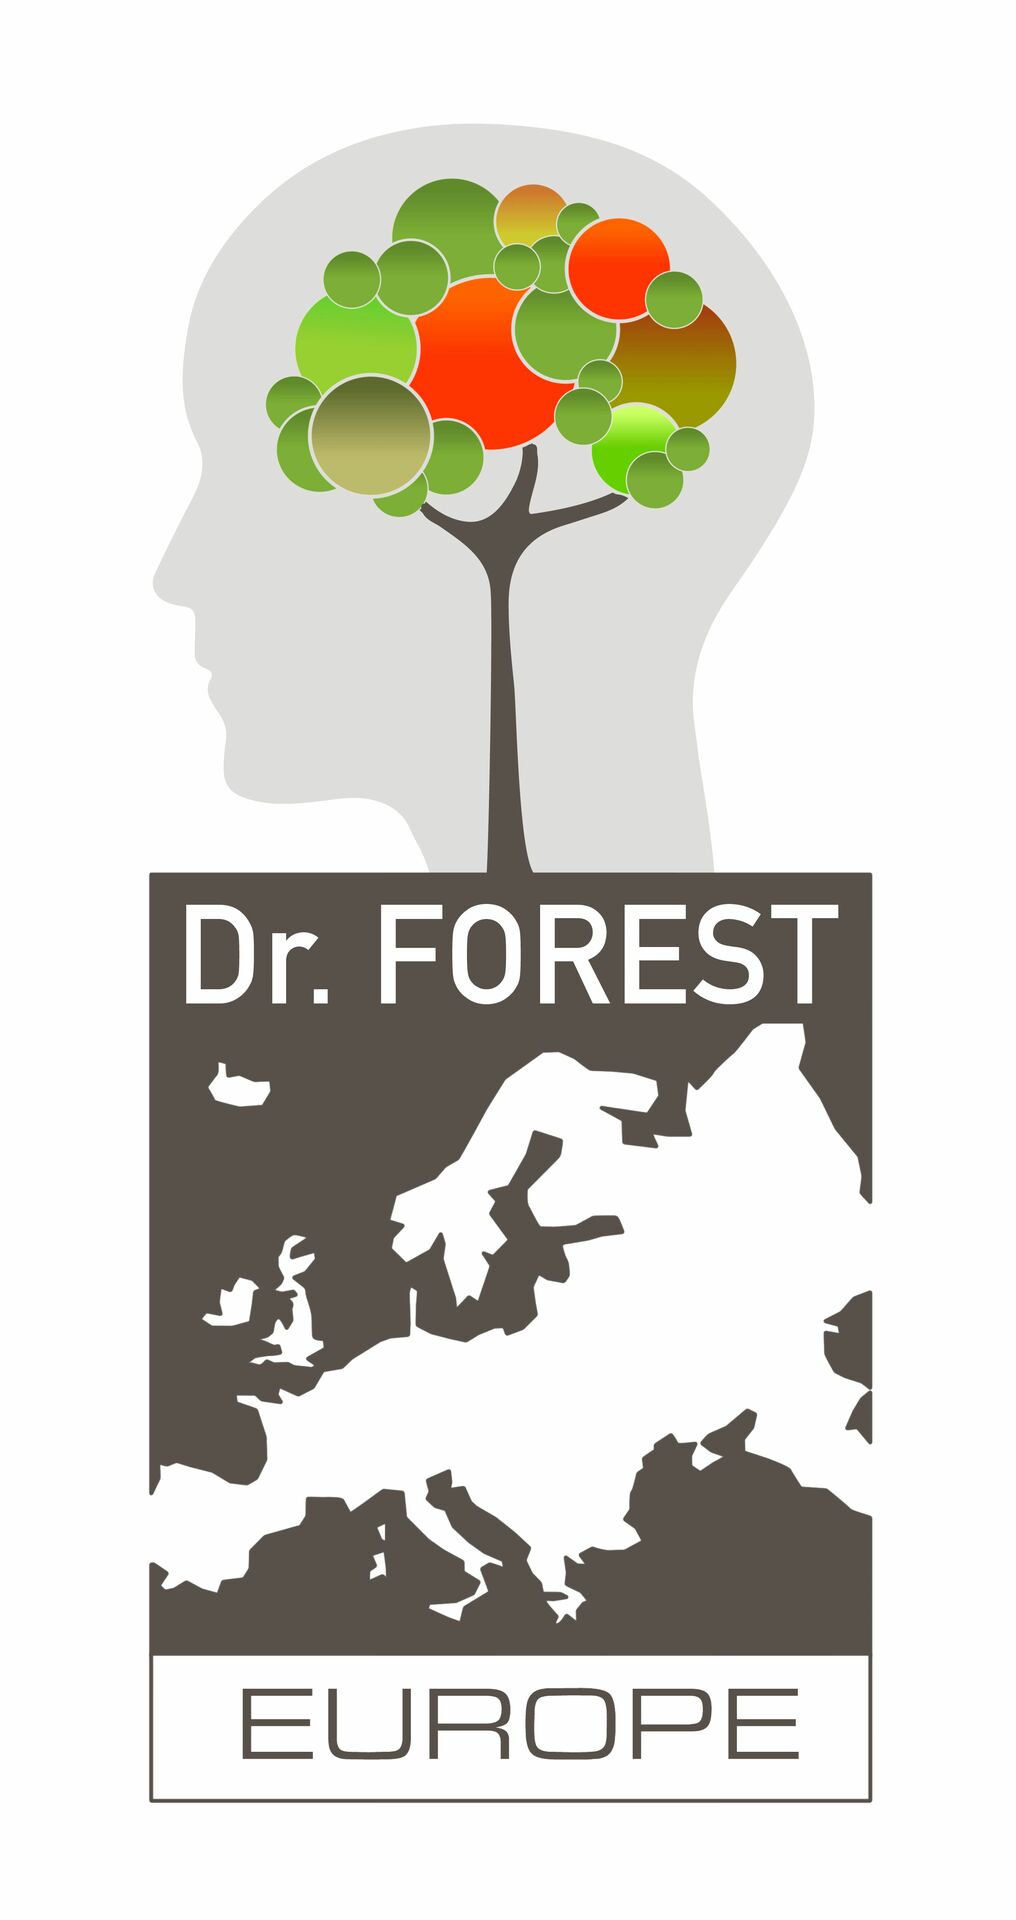 Logo Dr. Forest bestehend aus einem Kopf, einem Baum und dem Kontinent Europa